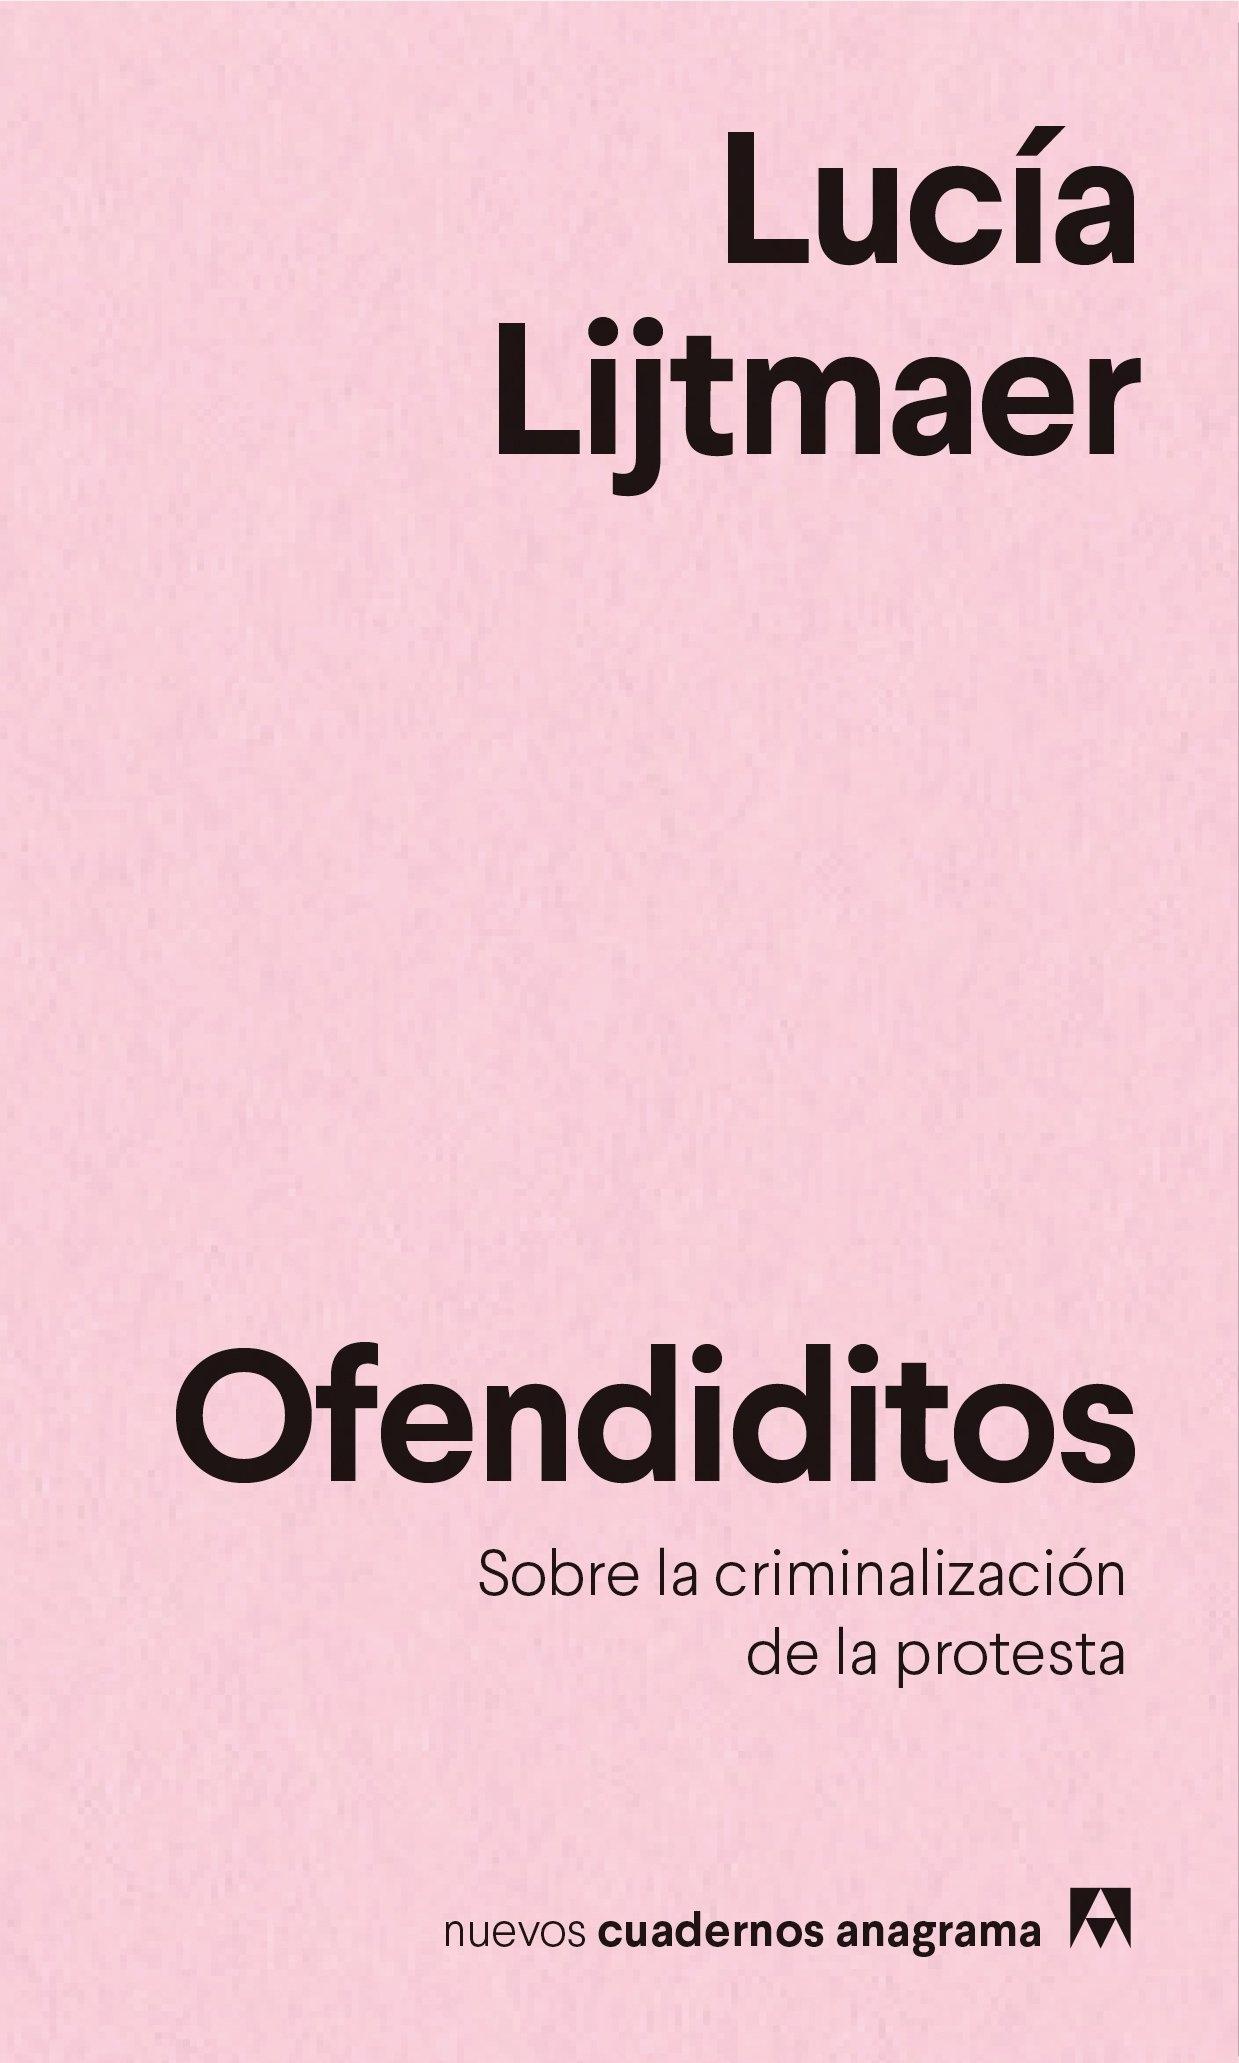 OFENDIDITOS "SOBRE LA CRIMINALIZACIÓN DE LA PROTESTA"